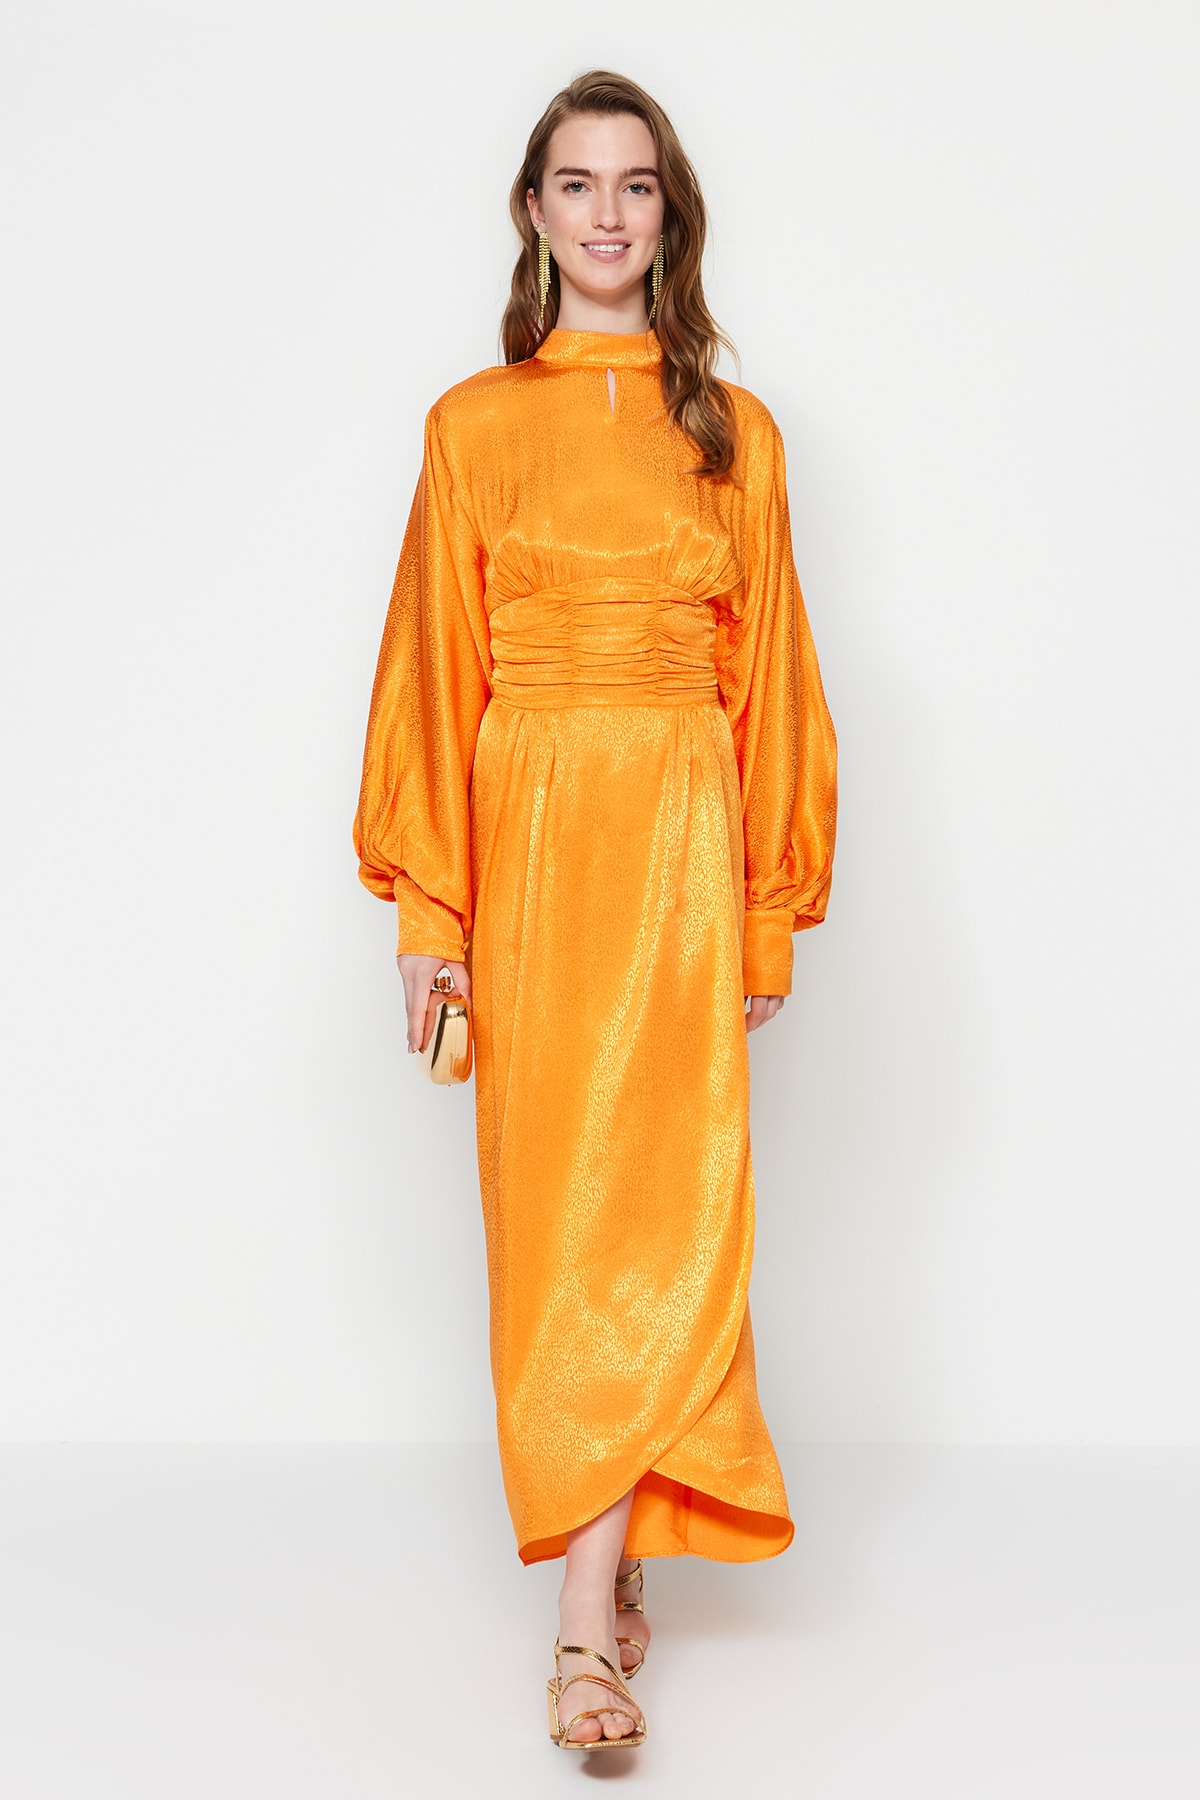 Trendyol oranžové večerné šaty so zahaleným pásom a balónovými rukávmi vzorované